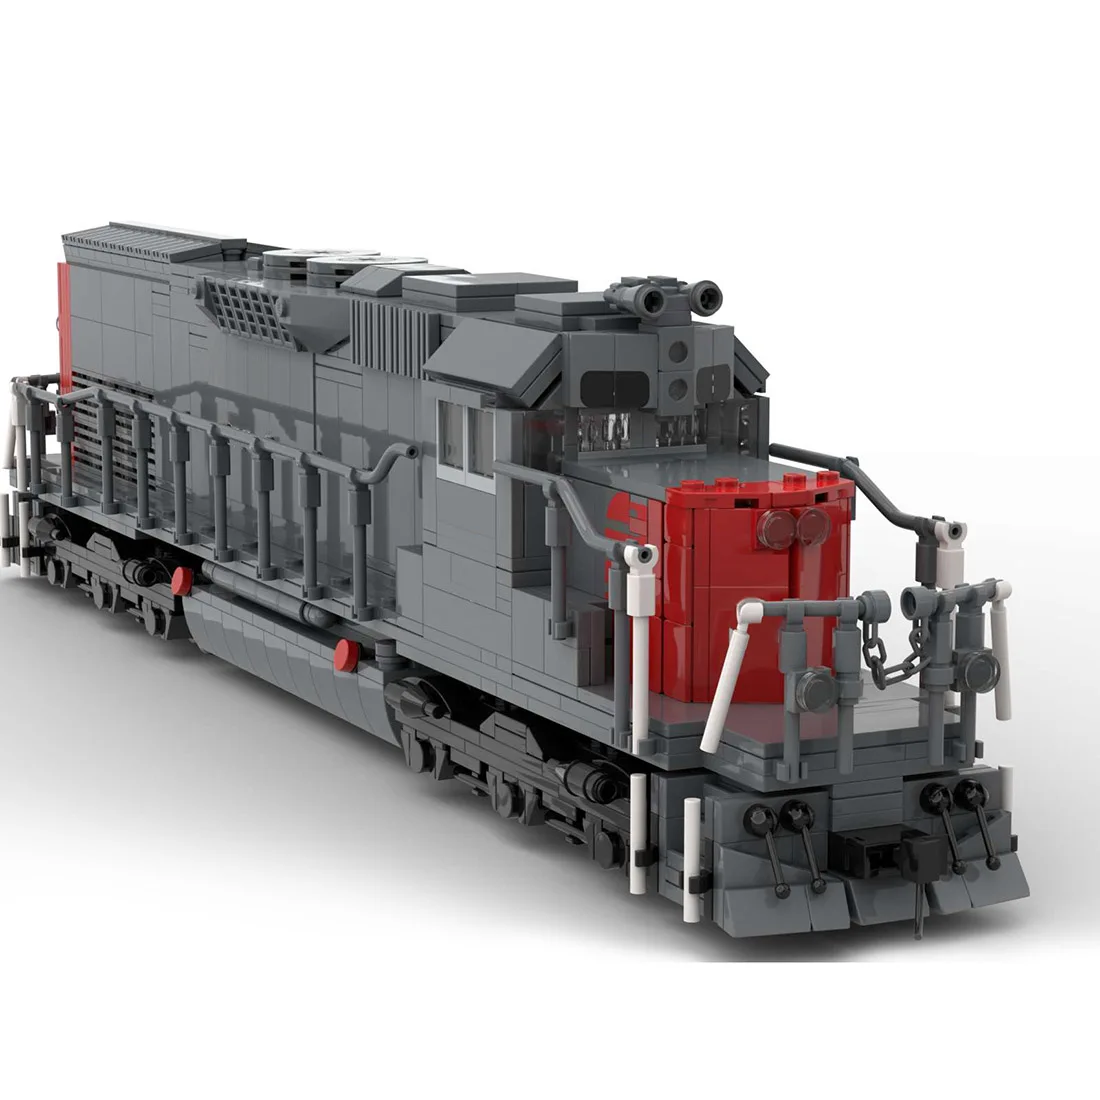 Авторизованный набор Строительных блоков Модели Поезда MOC-112383 Southern Pacific SD40T-2 от Jepaz